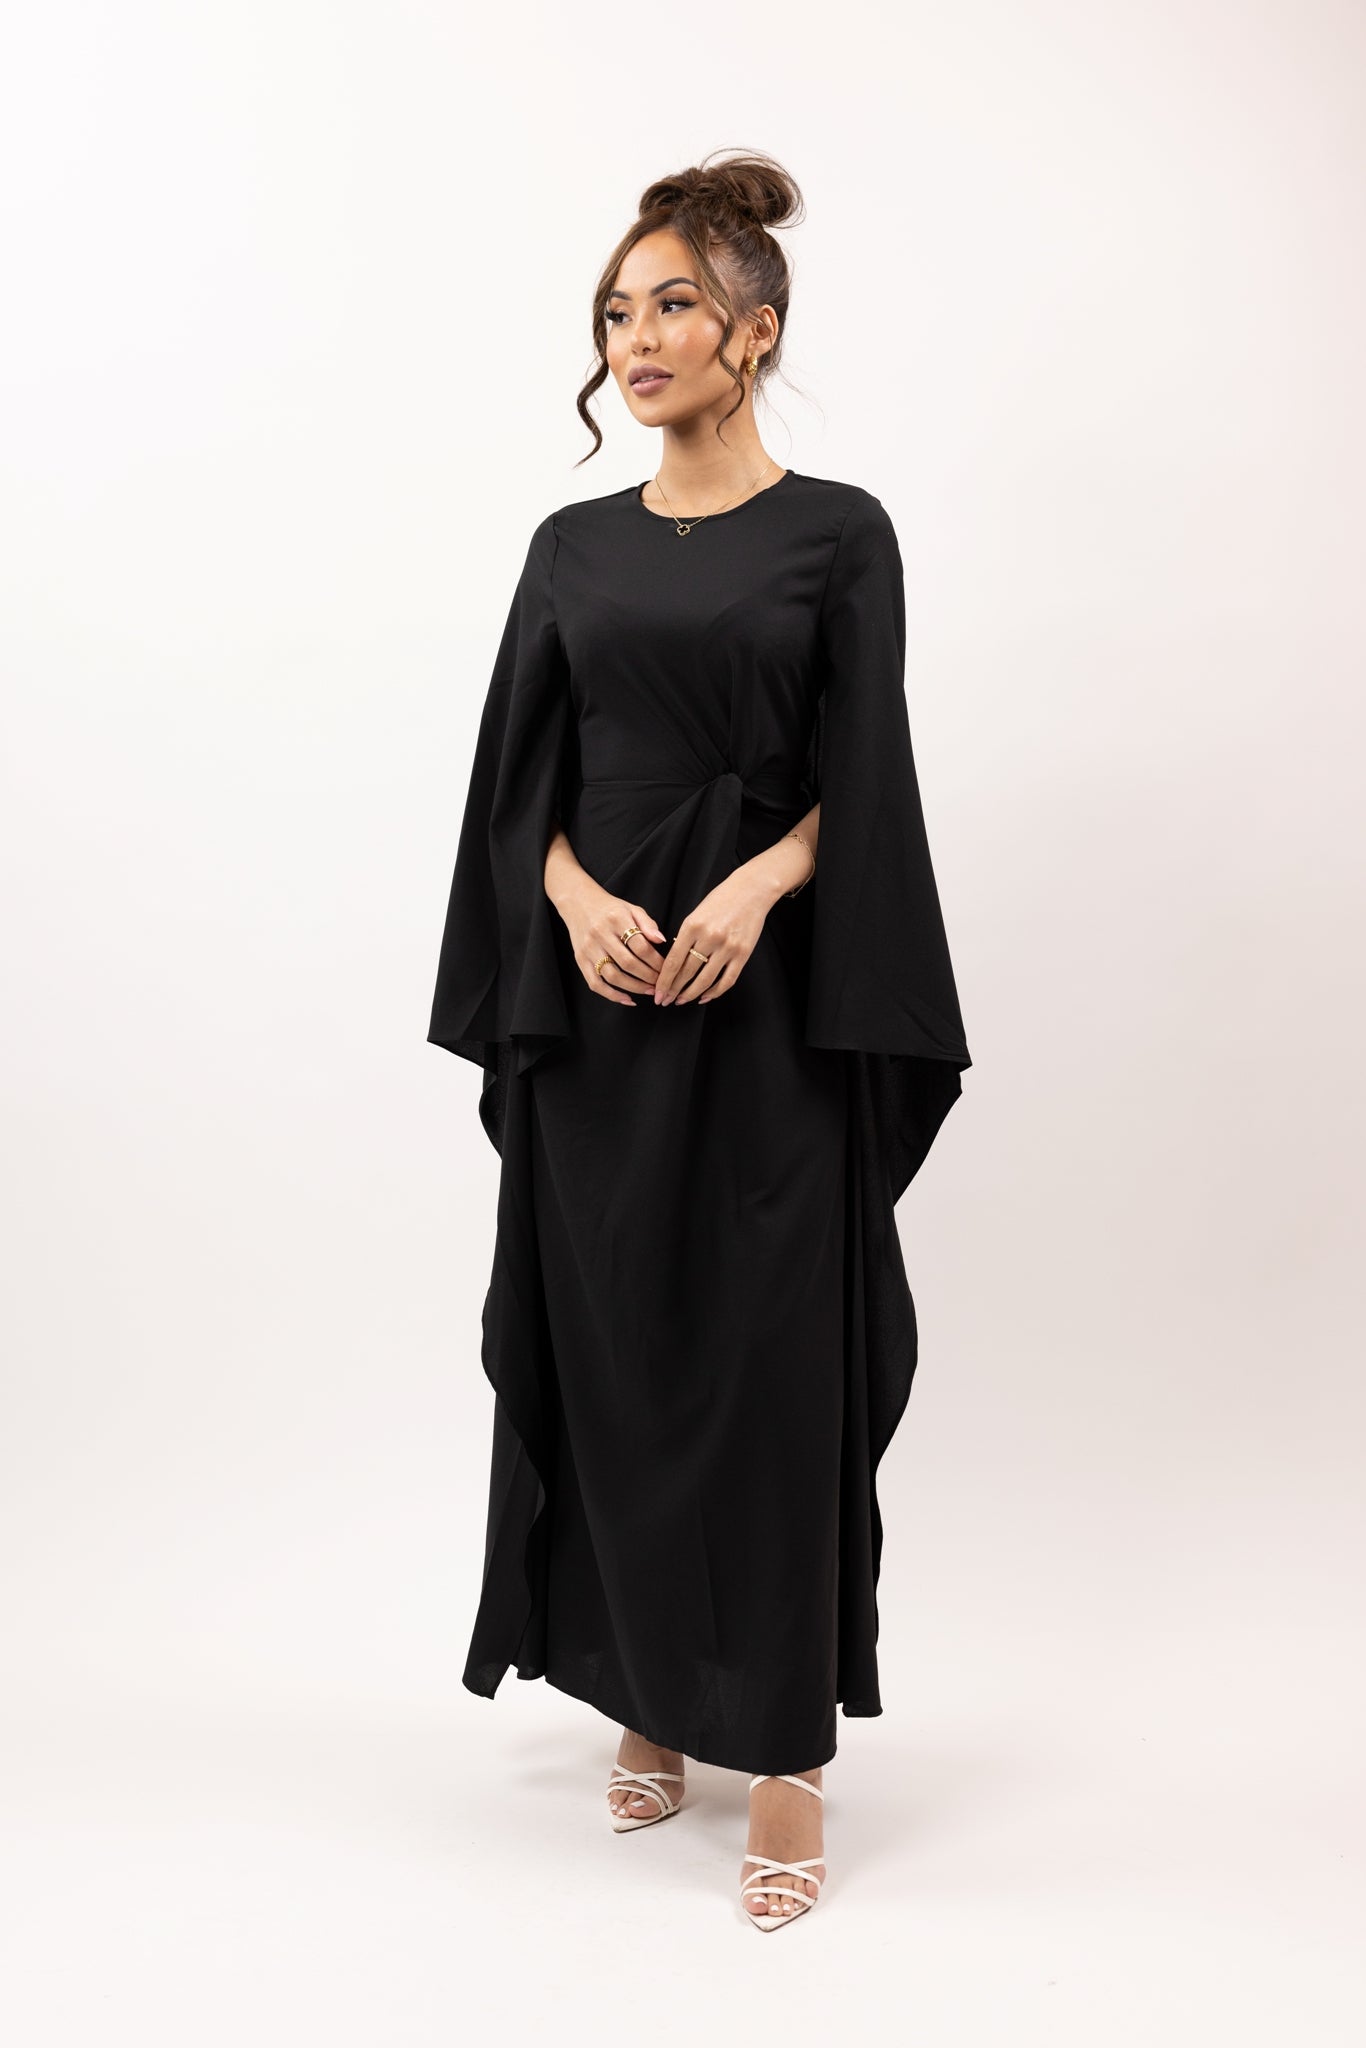 M8363Black-dress-kaftan-abaya